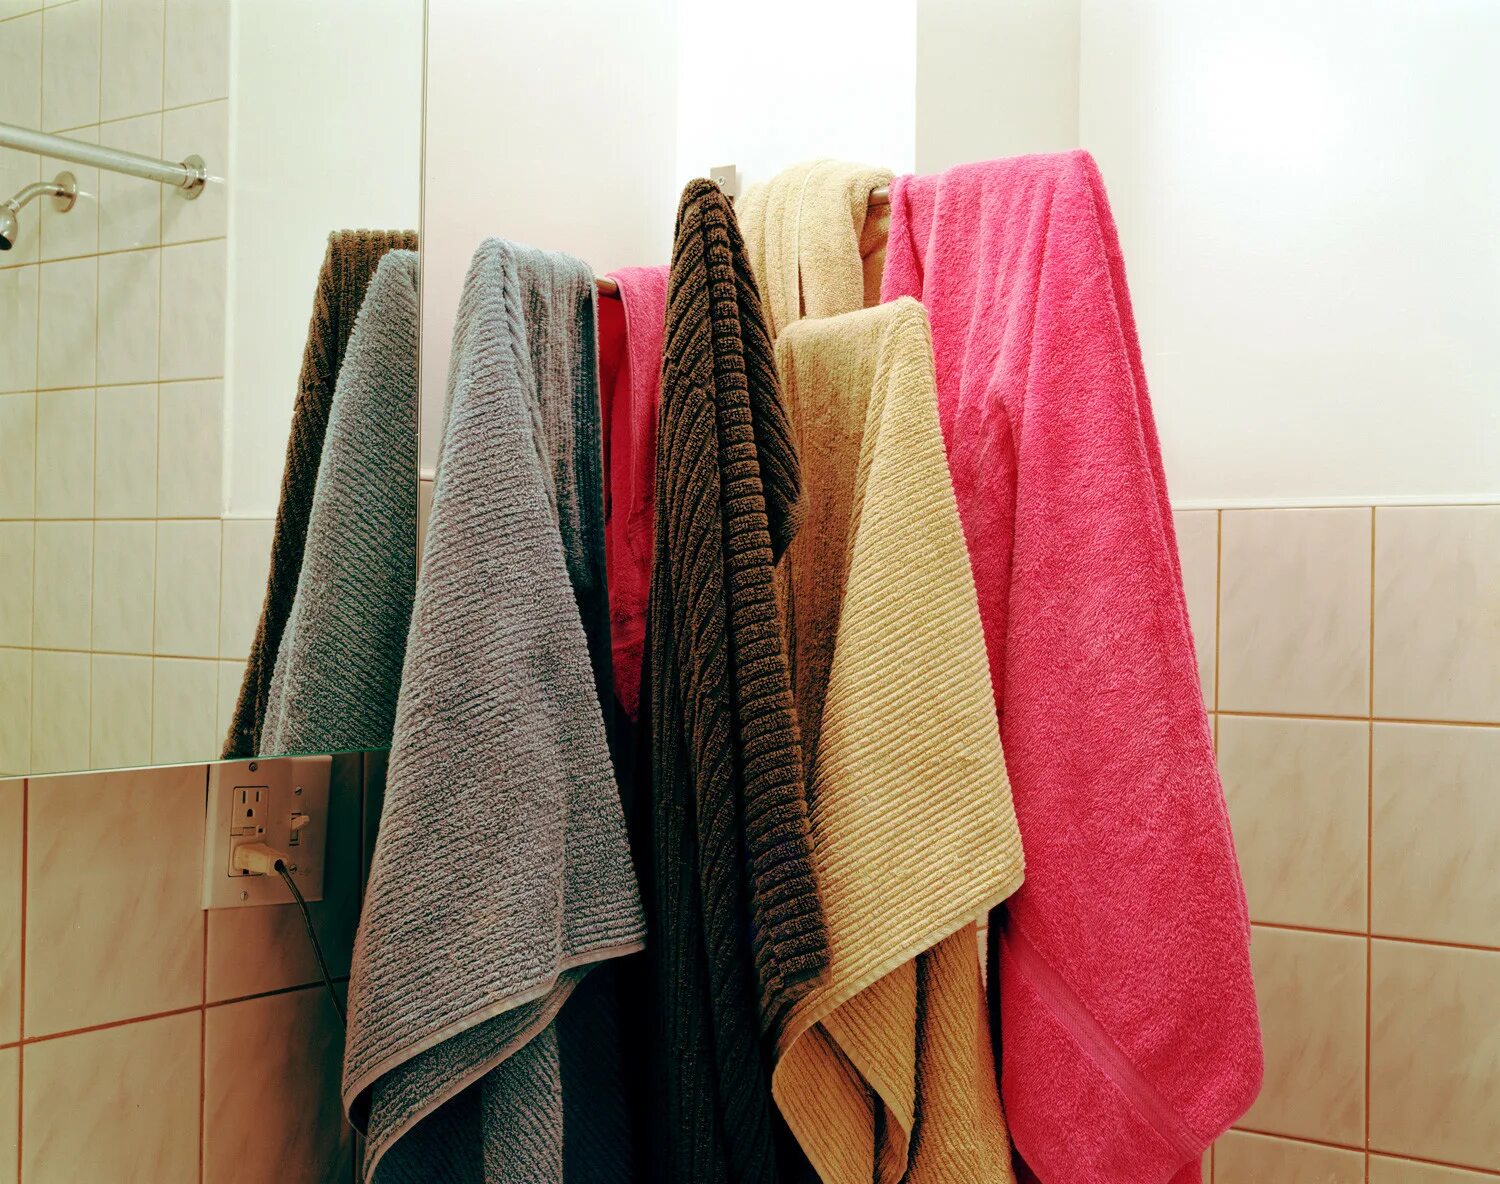 Полотенца в ванной. Полотенца и халаты в ванной комнате. Куча полотенец. Много полотенец. 4 несколько полотенцев